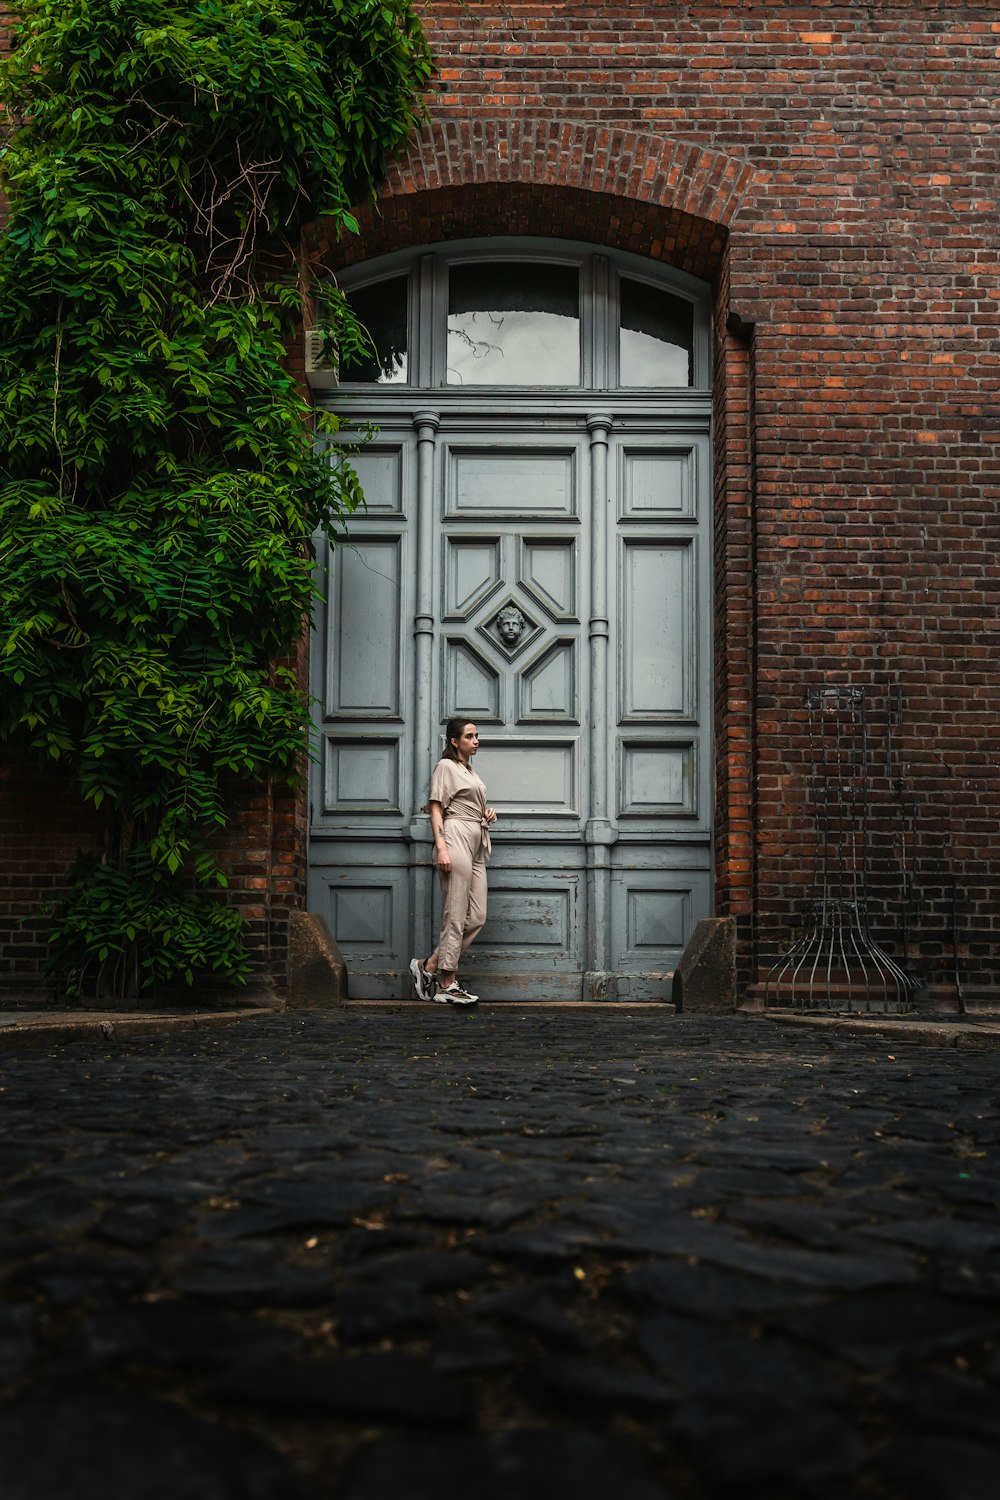 Una persona parada frente a una puerta